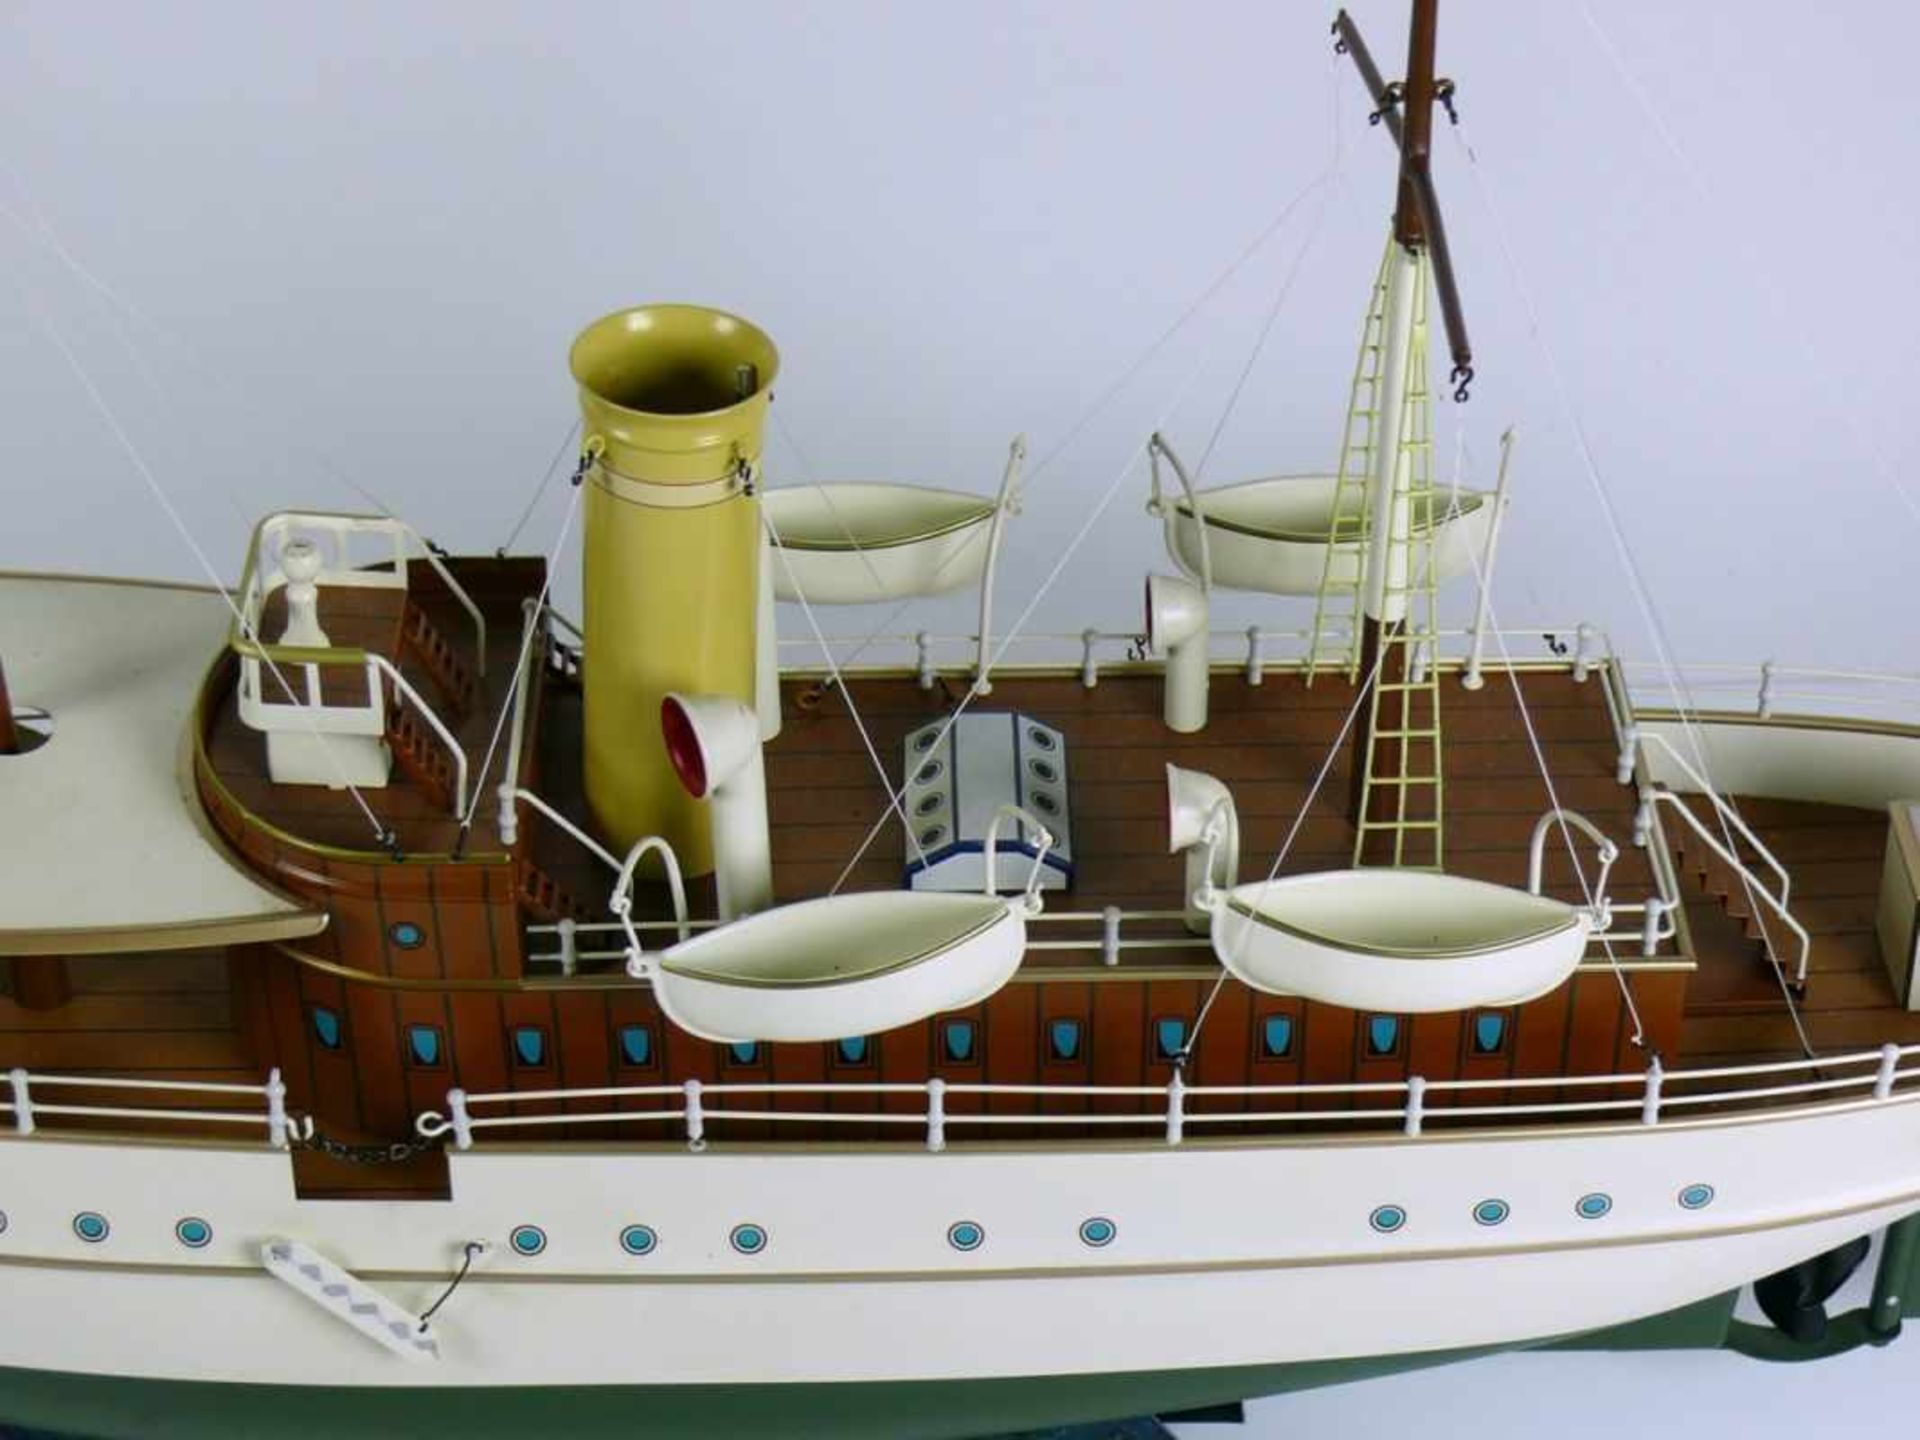 MÄRKLIN-Schiff "JOLANDA" (2.H.20.Jh.) farbig lackiertes Blech; auf Gestell mit Rollen; - Bild 4 aus 4